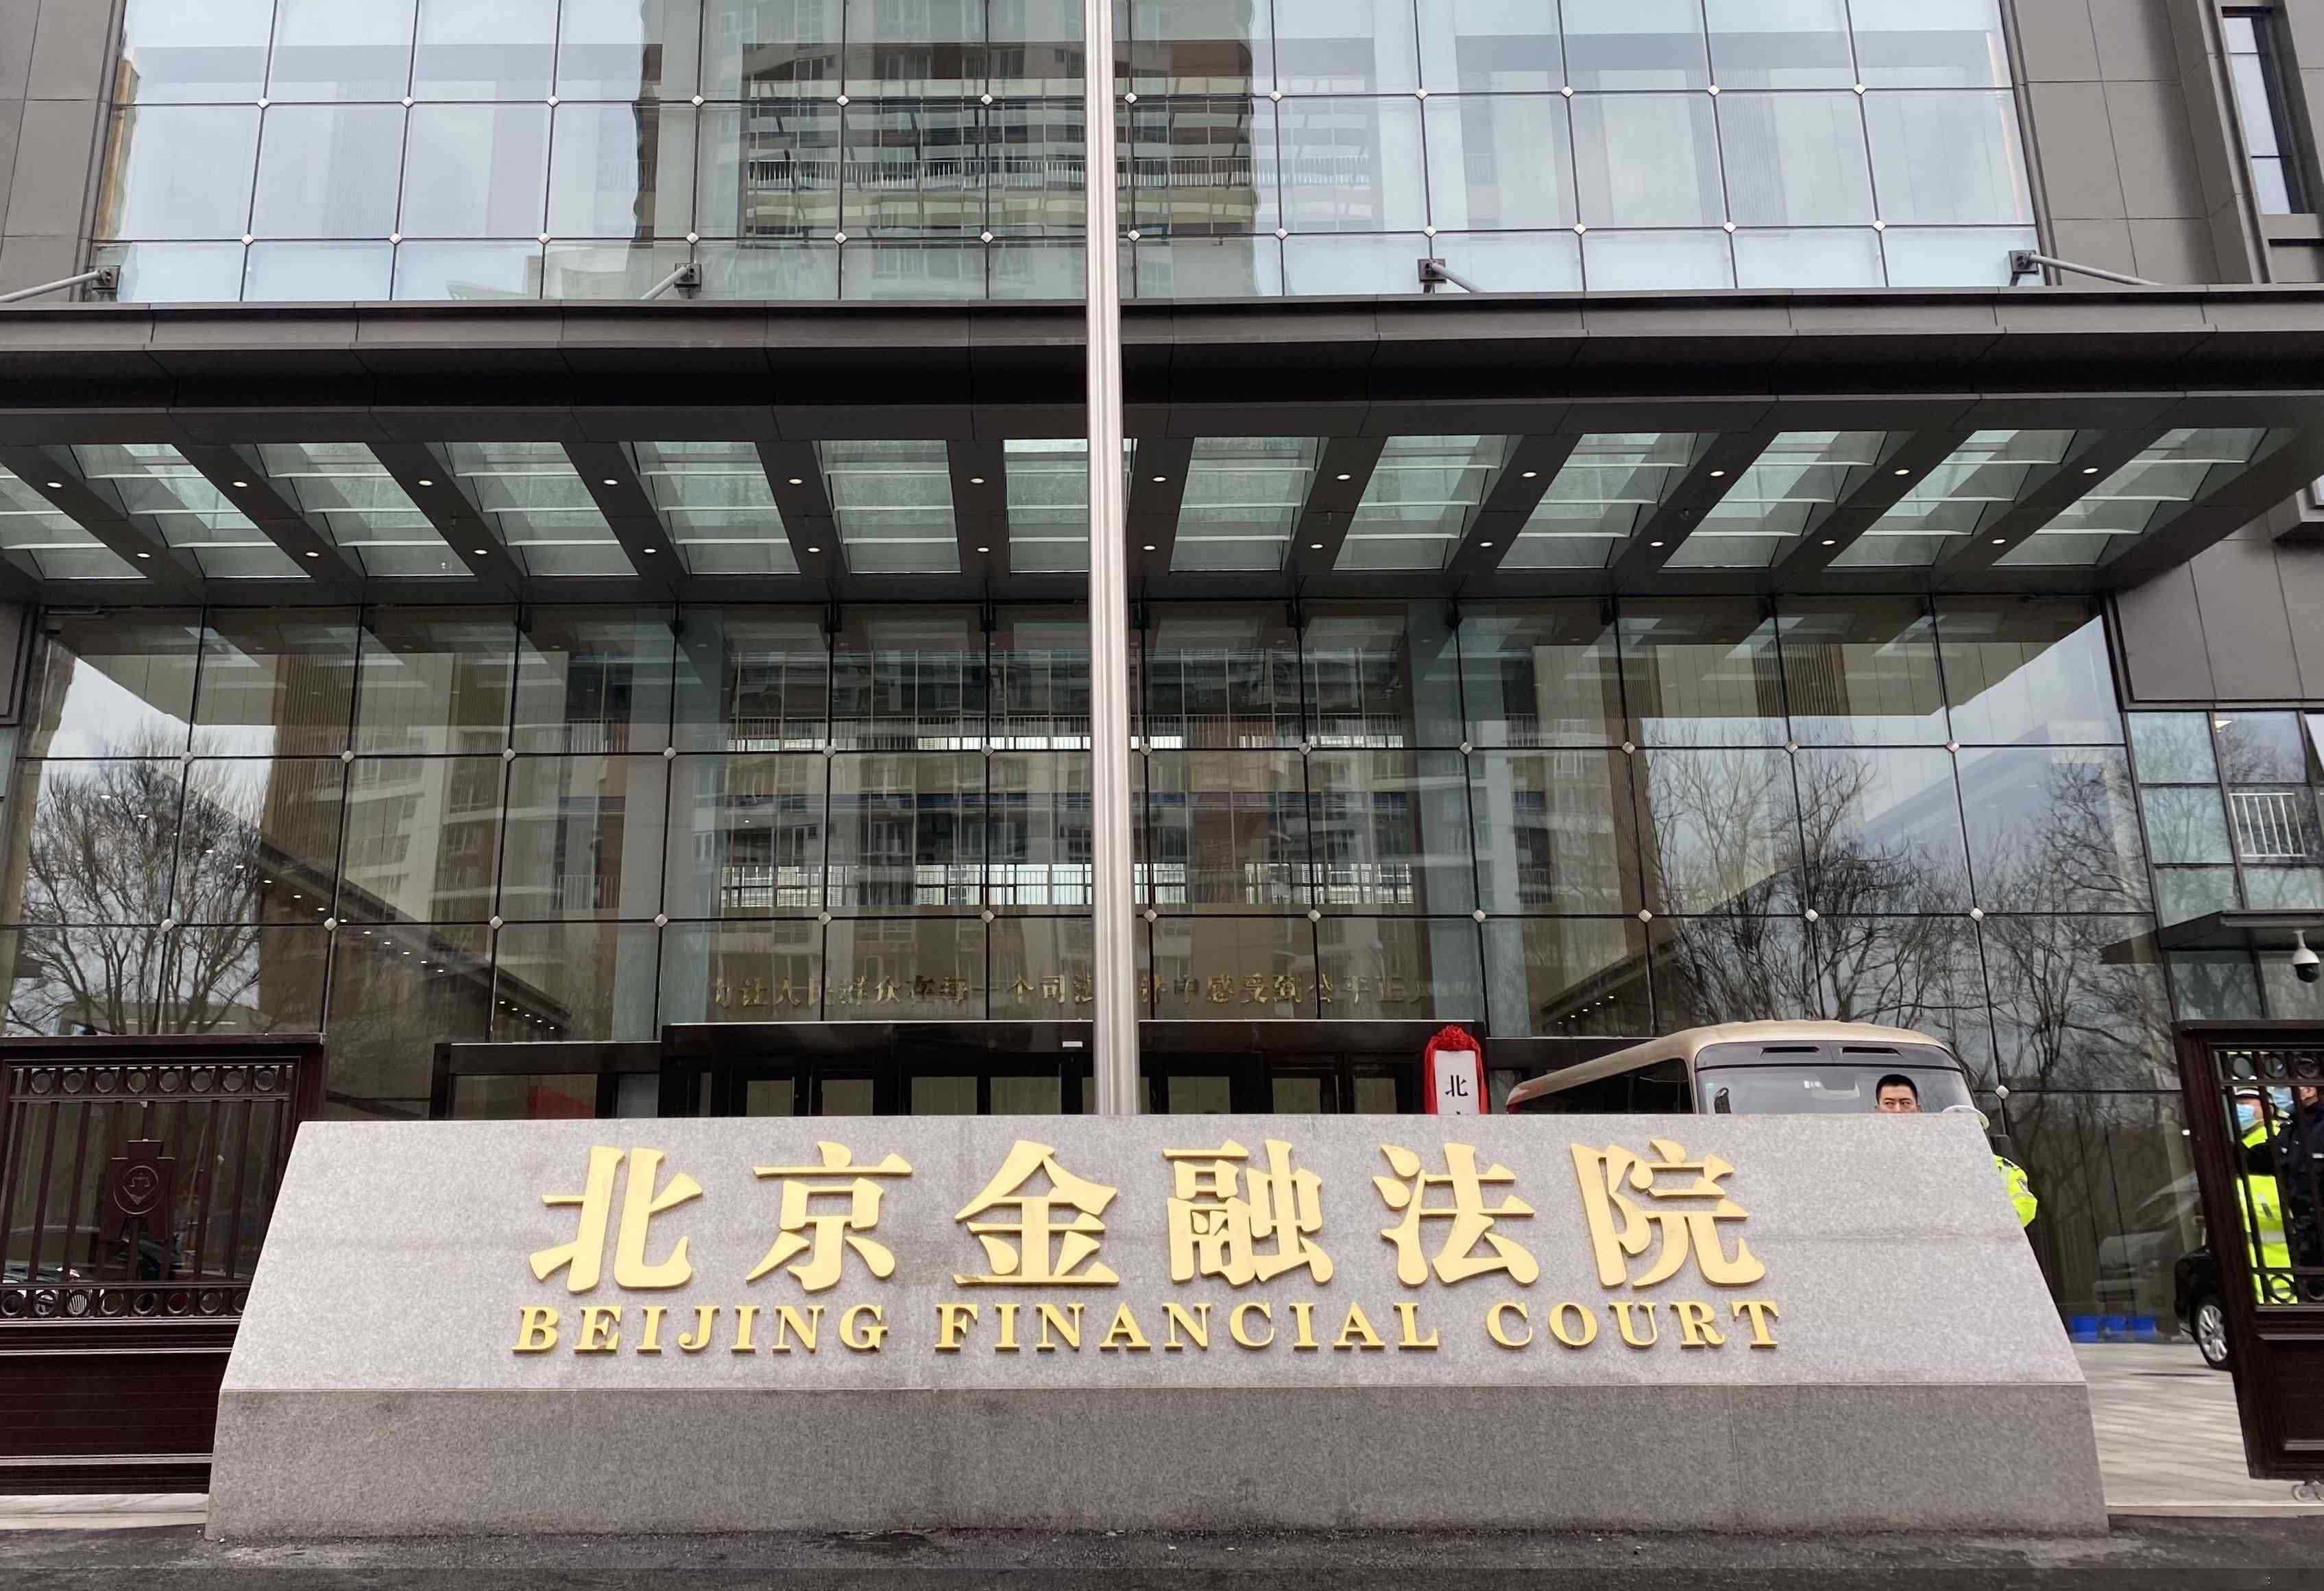 Tribunal Financiero de Beijing: la cláusula de arbitraje opcional unilateral no pertenece a la situación de "arbitraje o litigio" y debe considerarse válida